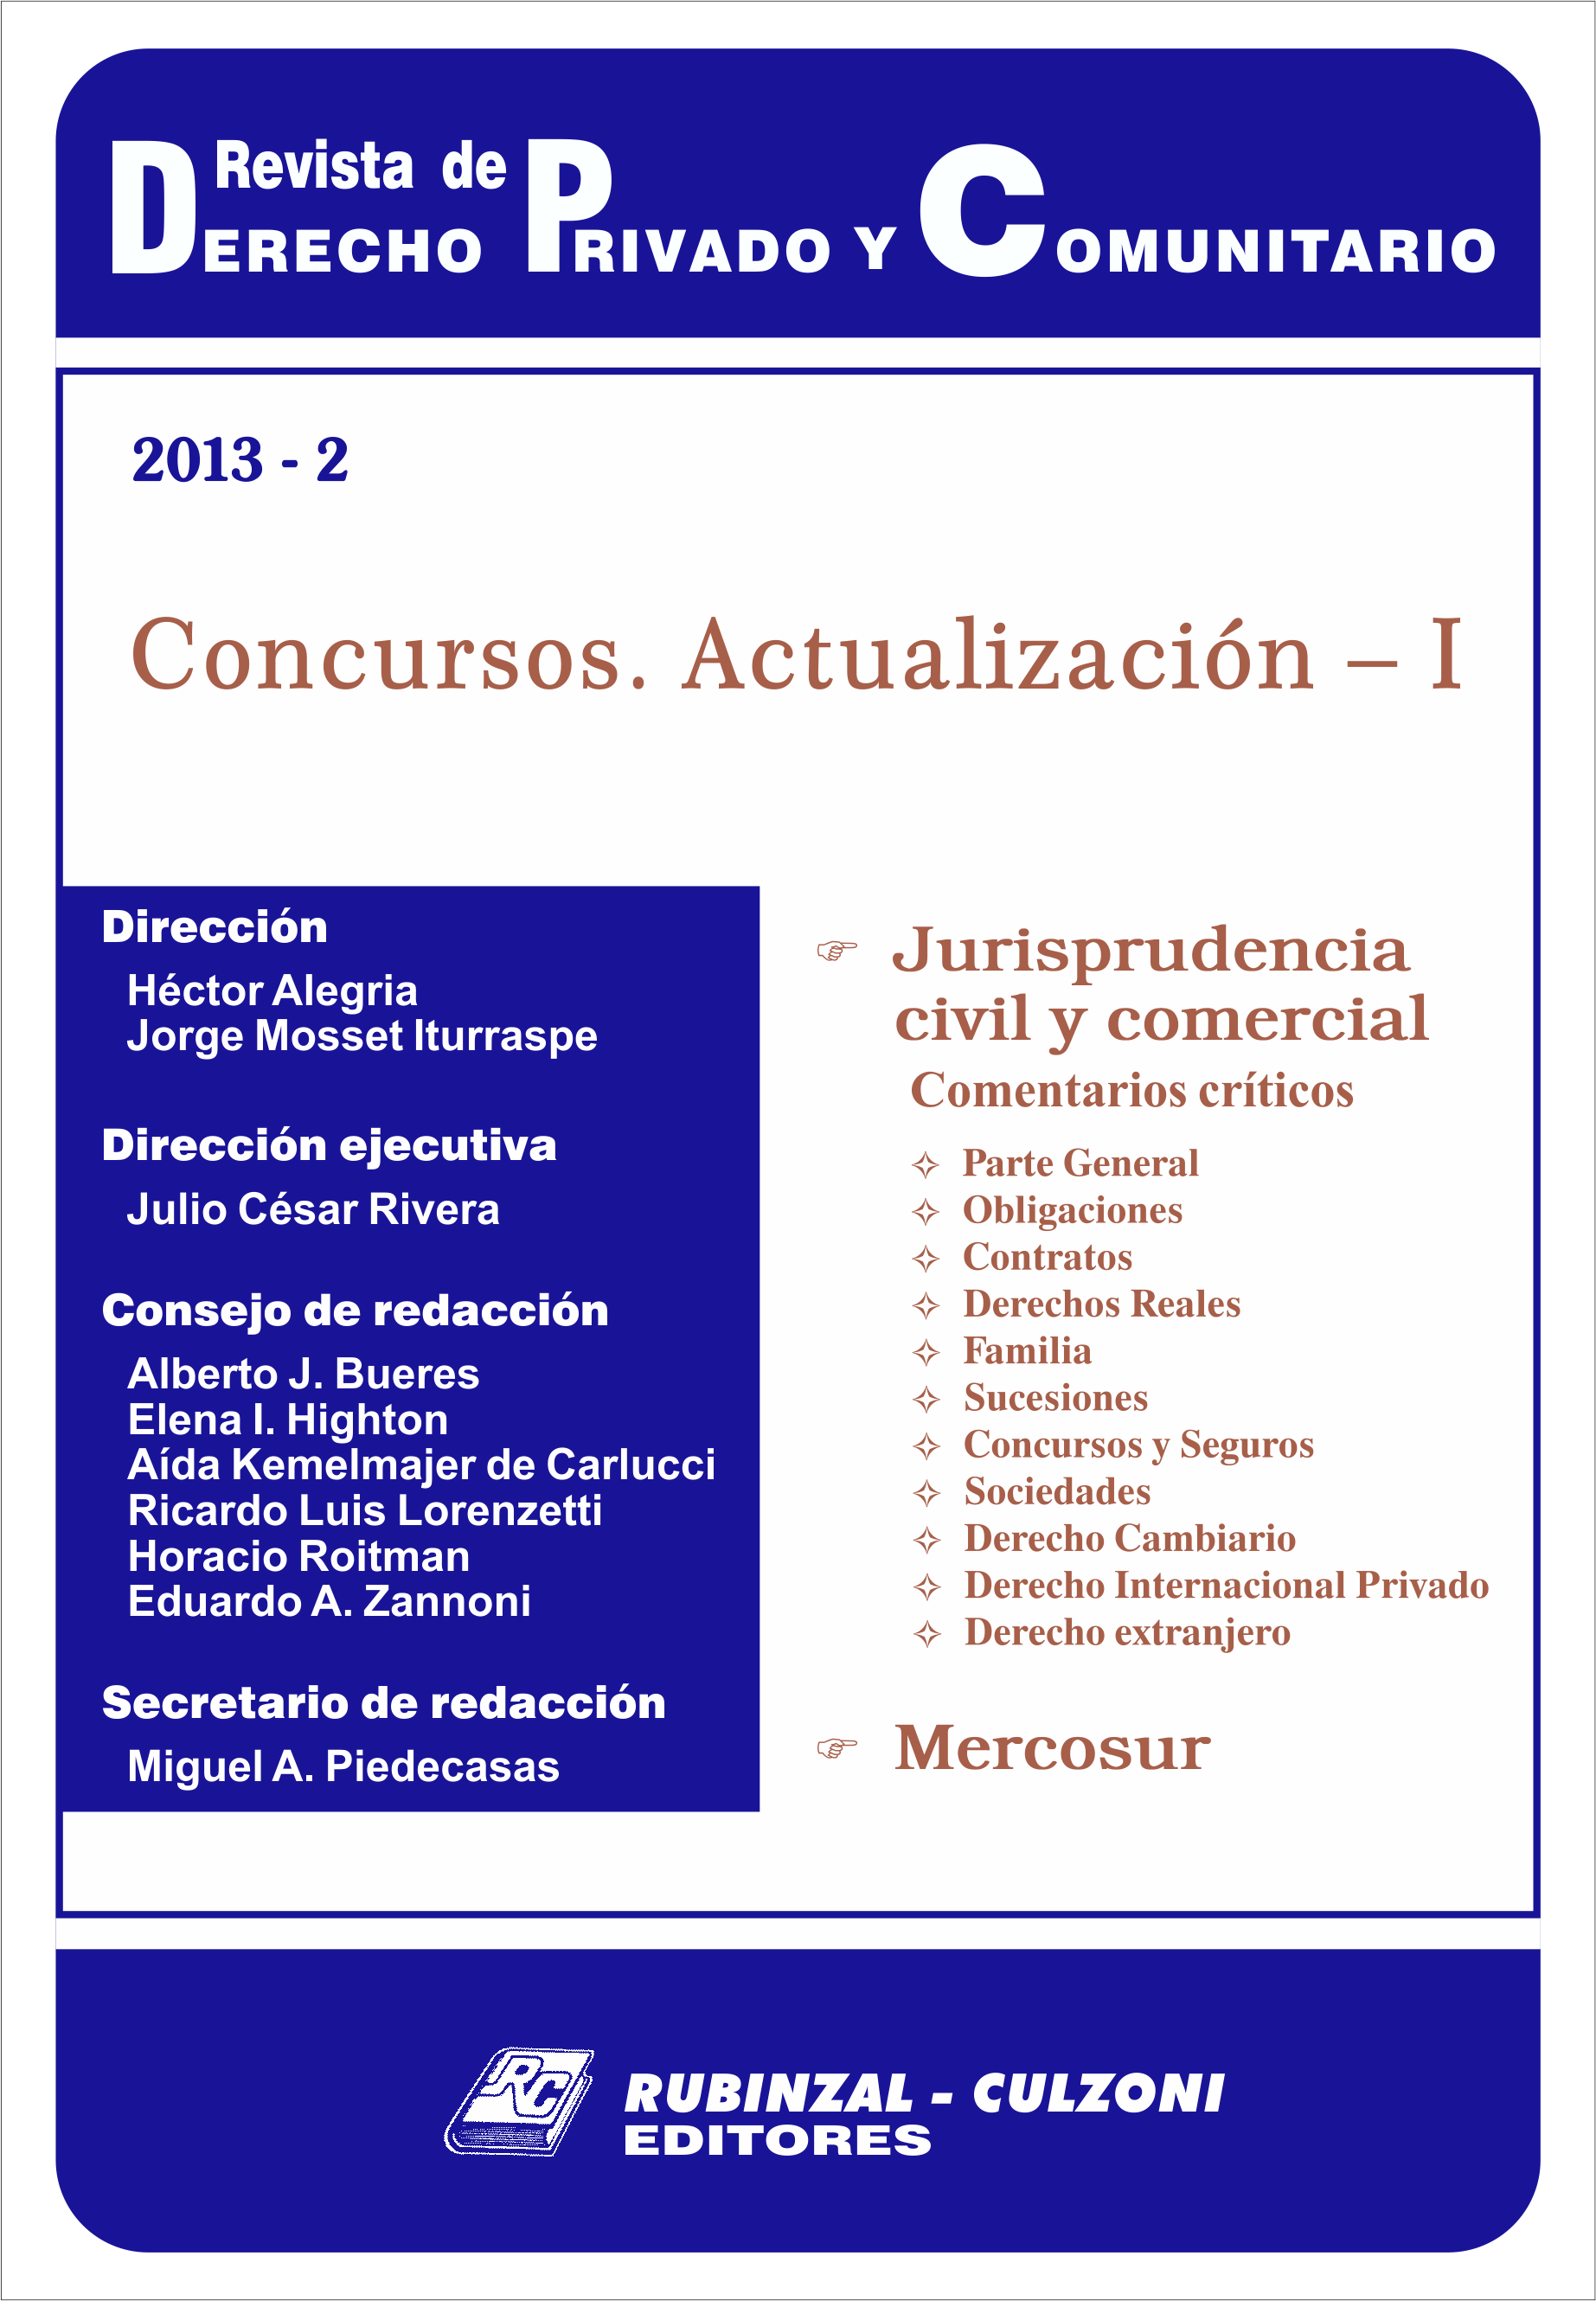 Revista de Derecho Privado y Comunitario - Concursos. Actualización - I.